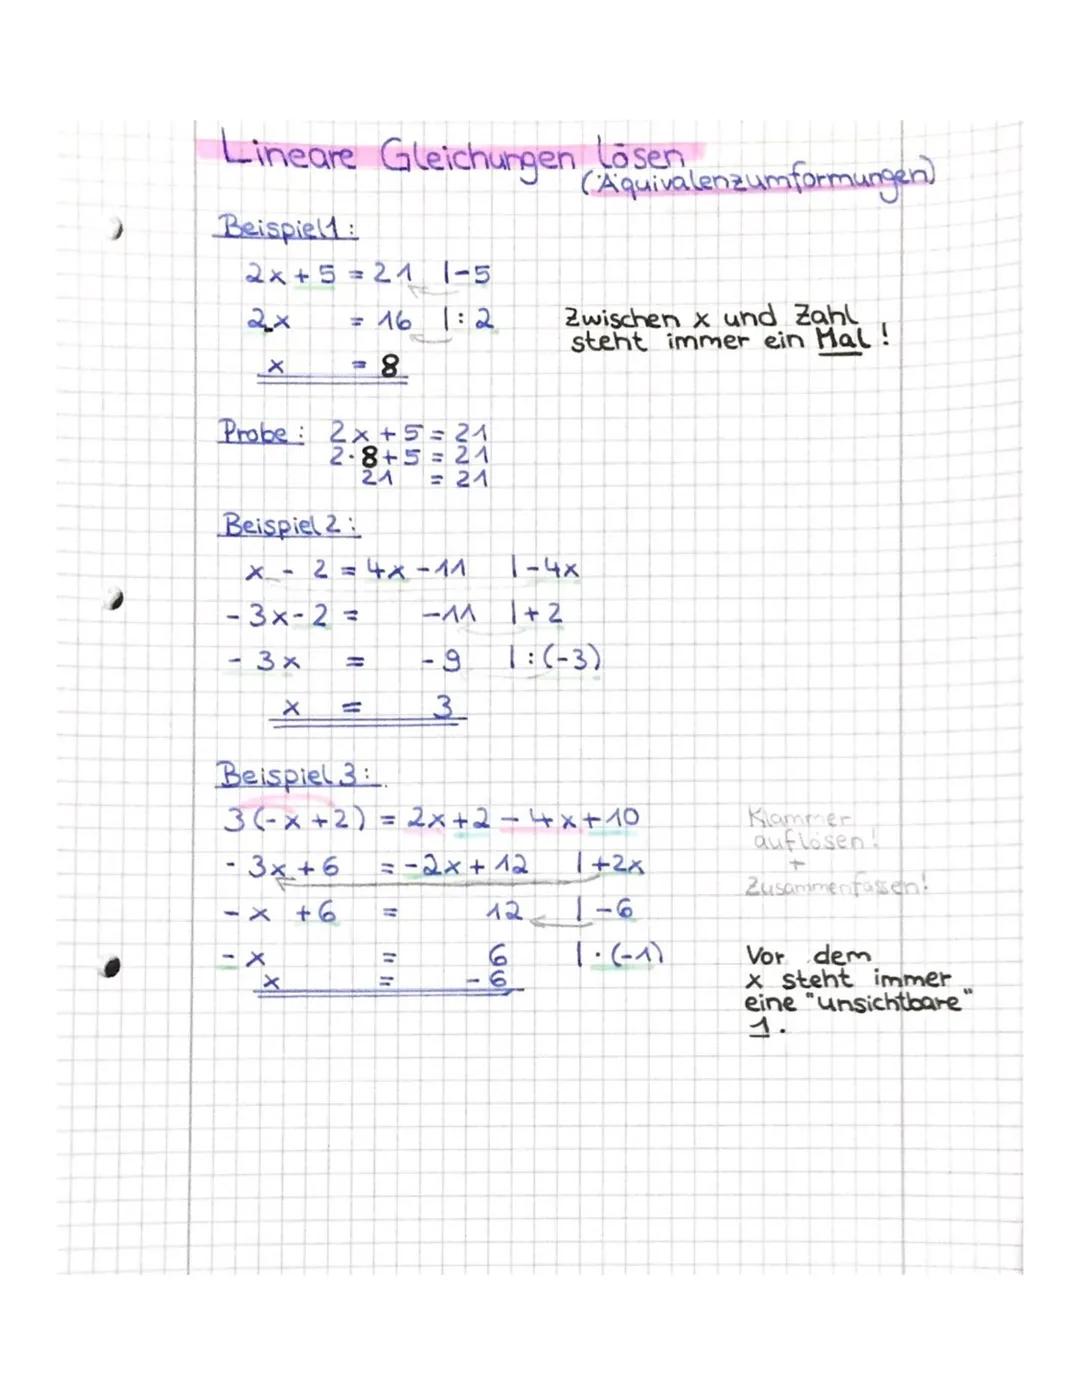 .
Lineare Gleichungen Lösen
Beispiel:
2x+5=21 1-5
= 16 1:2
=8
X
Probe 2x+5=21
2-8+5=21
21 = 21
Beispiel 2
x - 2 = 4x -11
-3x-2 = -^^
- 3x =
